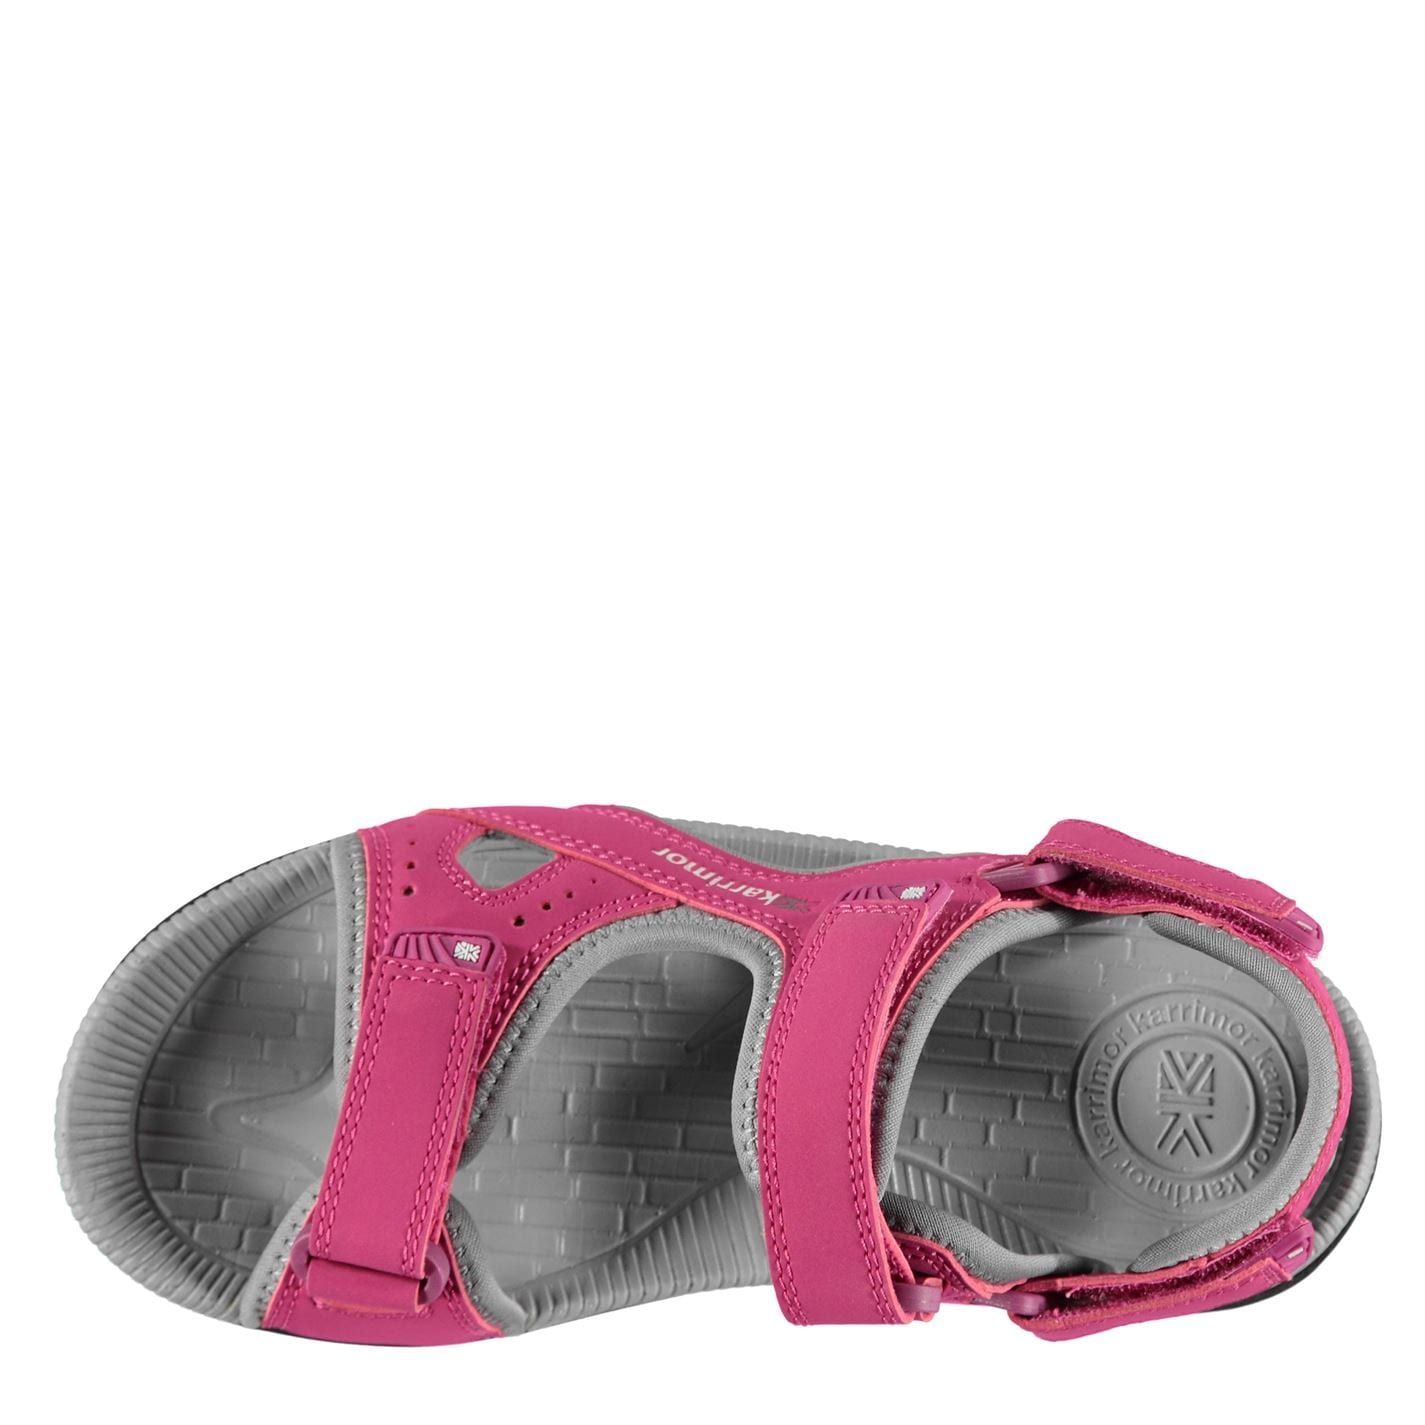 Karrimor Kids Antibes Junior Sandals Shoes Casual Summer Hook and Loop